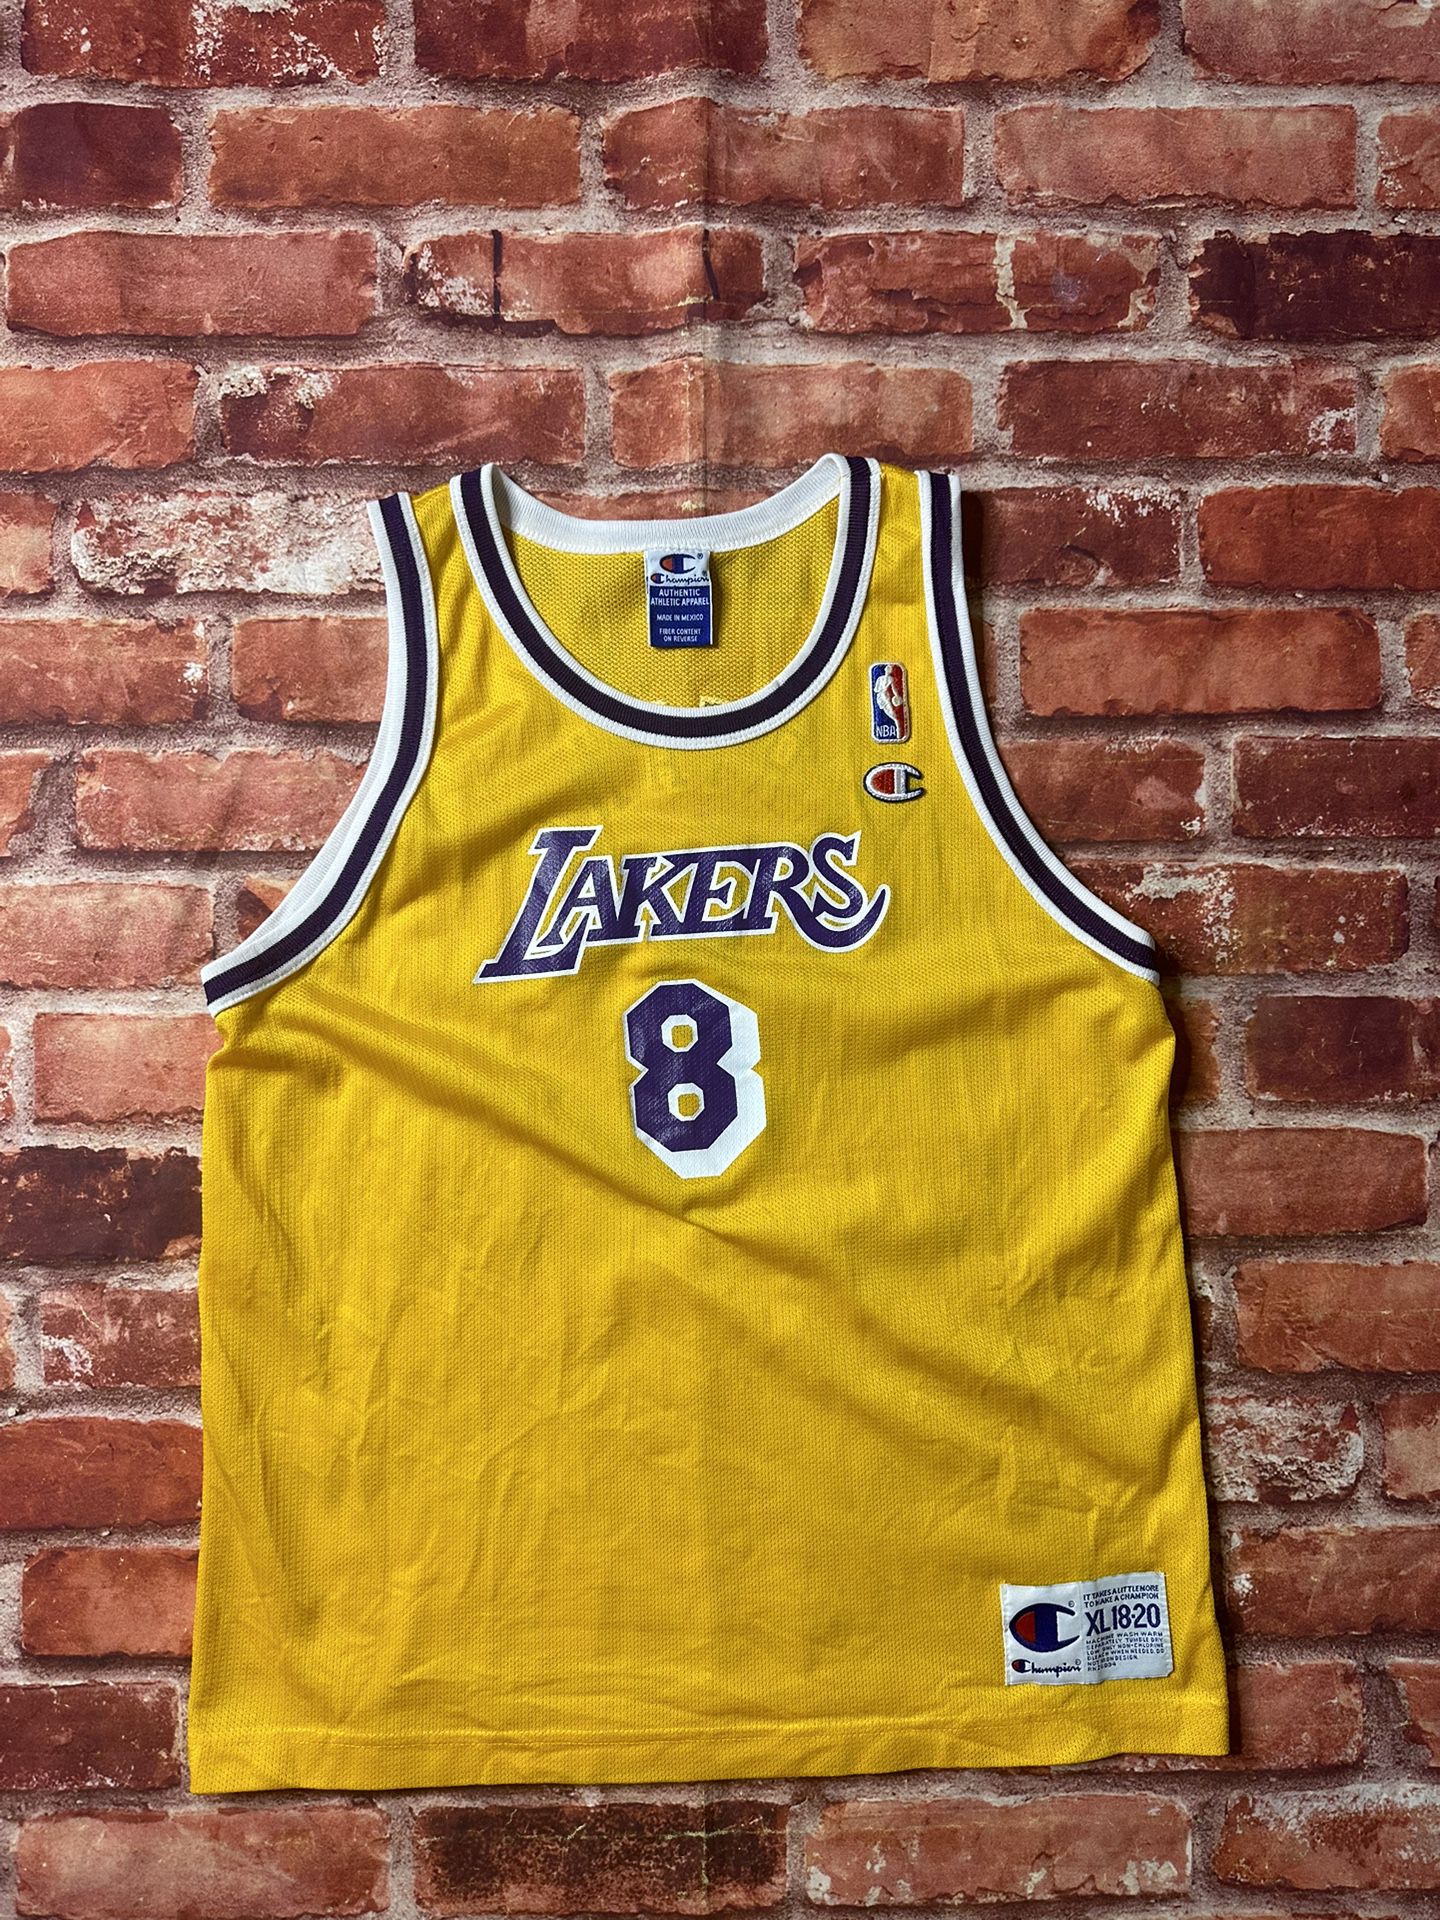 Lakers Champion kobe bryant jersey 8 purple XXL